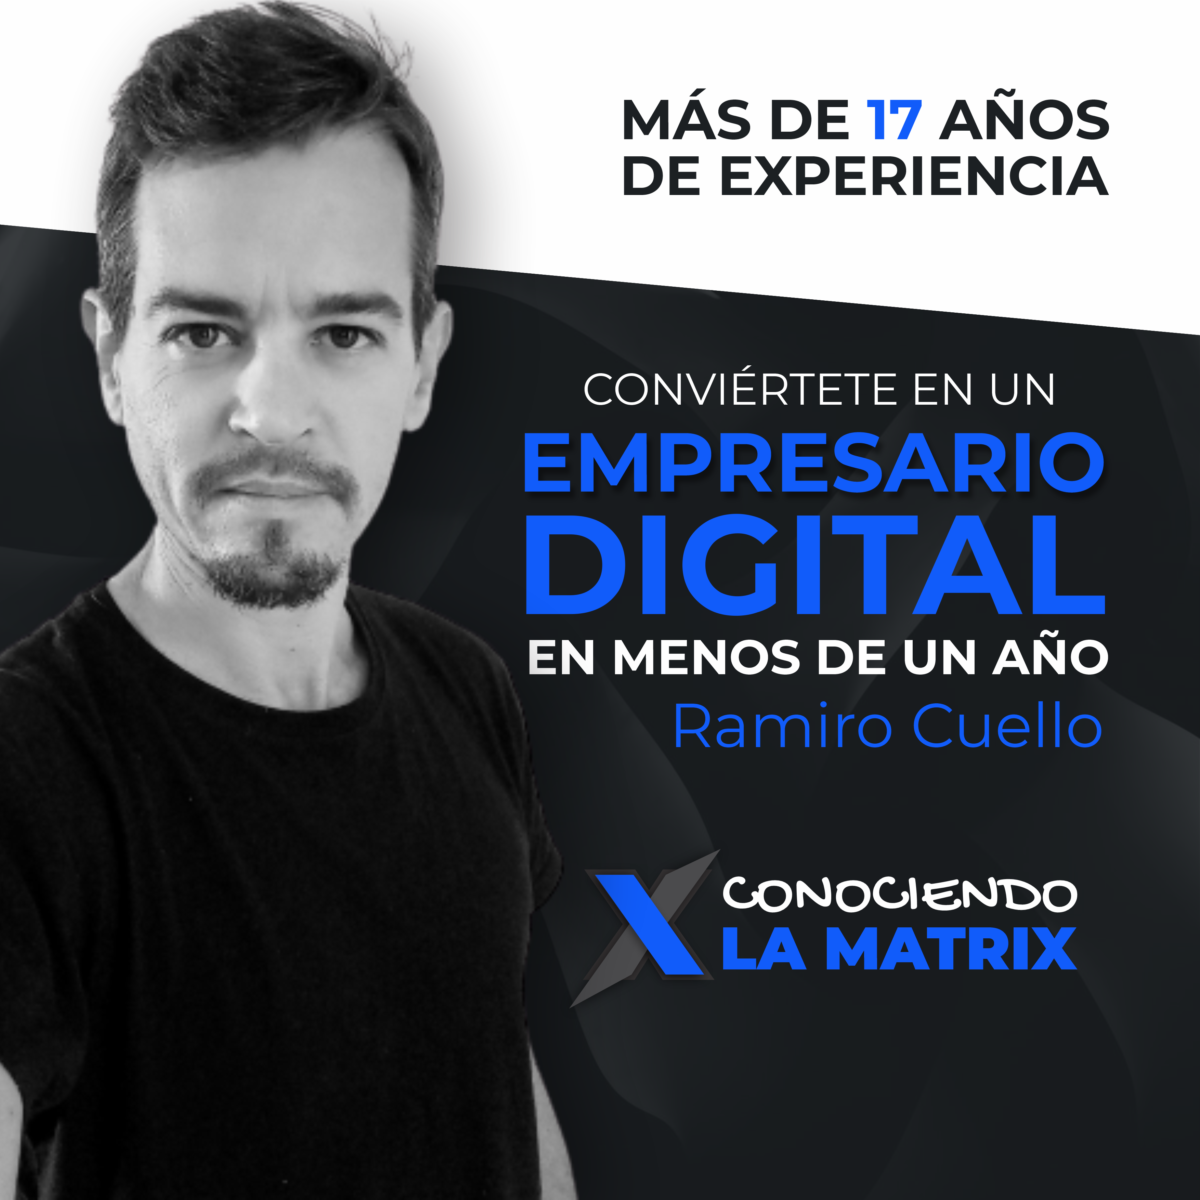 ¿El Curso de Marketing Digital de Ramiro Cuello es bueno? ¿Merece la pena?